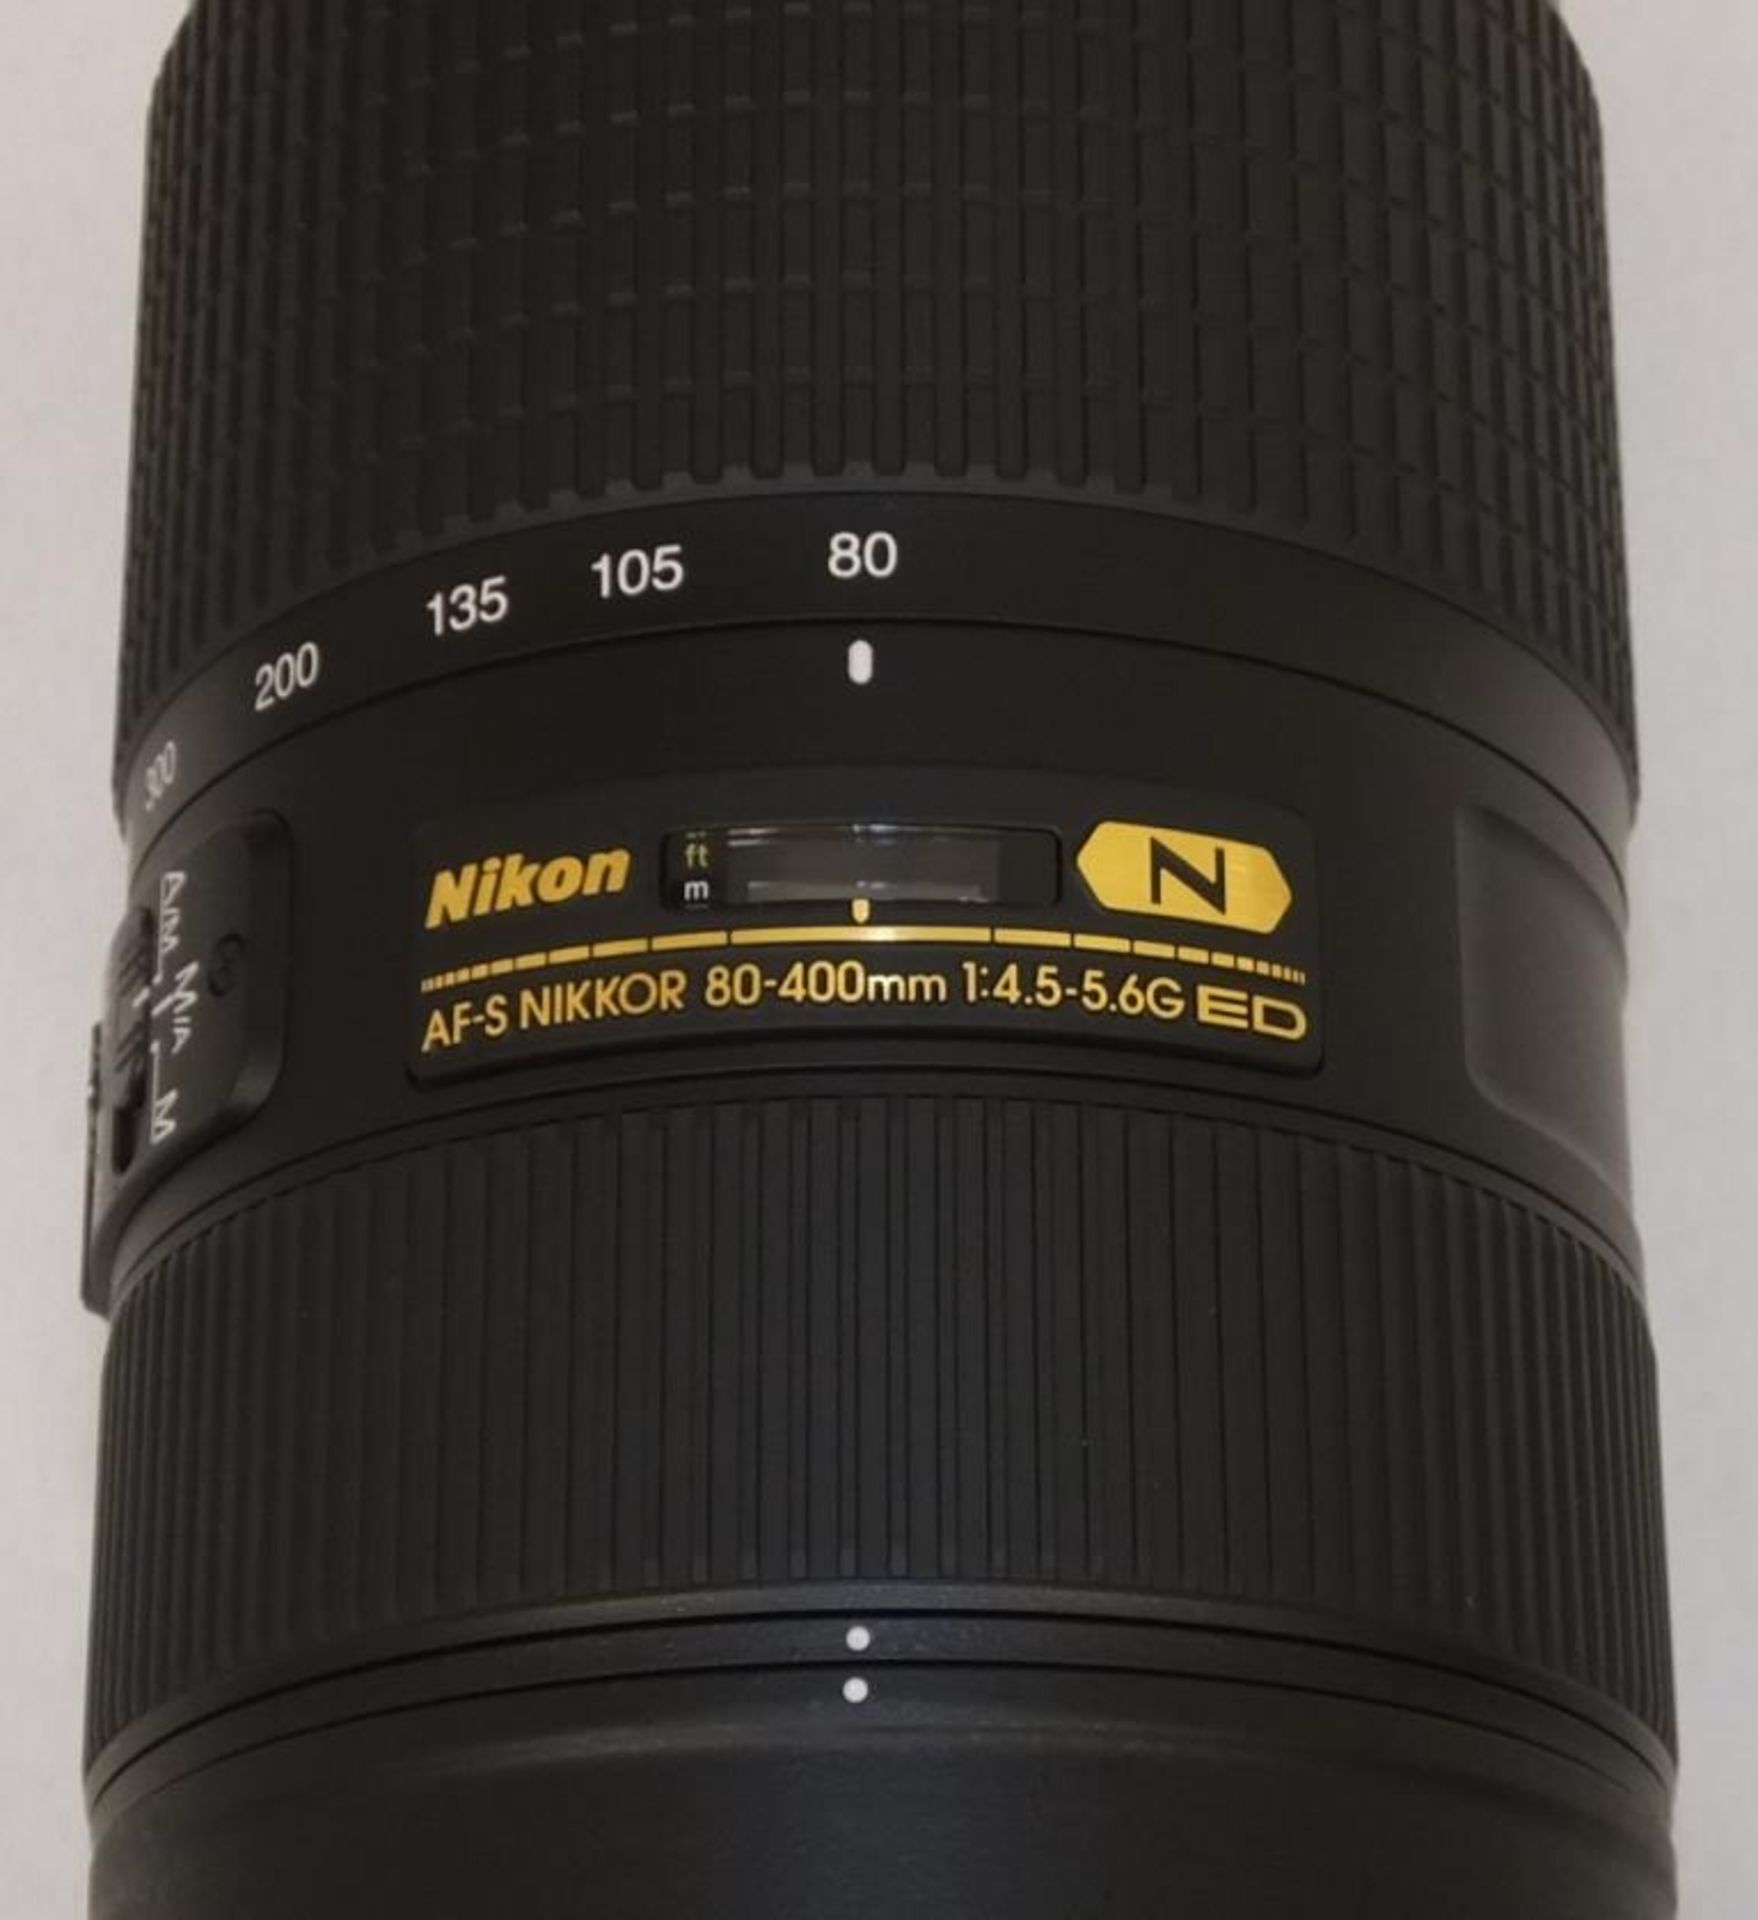 Nikon AF-S Nikkor 80-400mm F/4.5-5.6G ED VR Lens - Serial No. 268963 with Nikon CL-M2 Case - Image 3 of 7